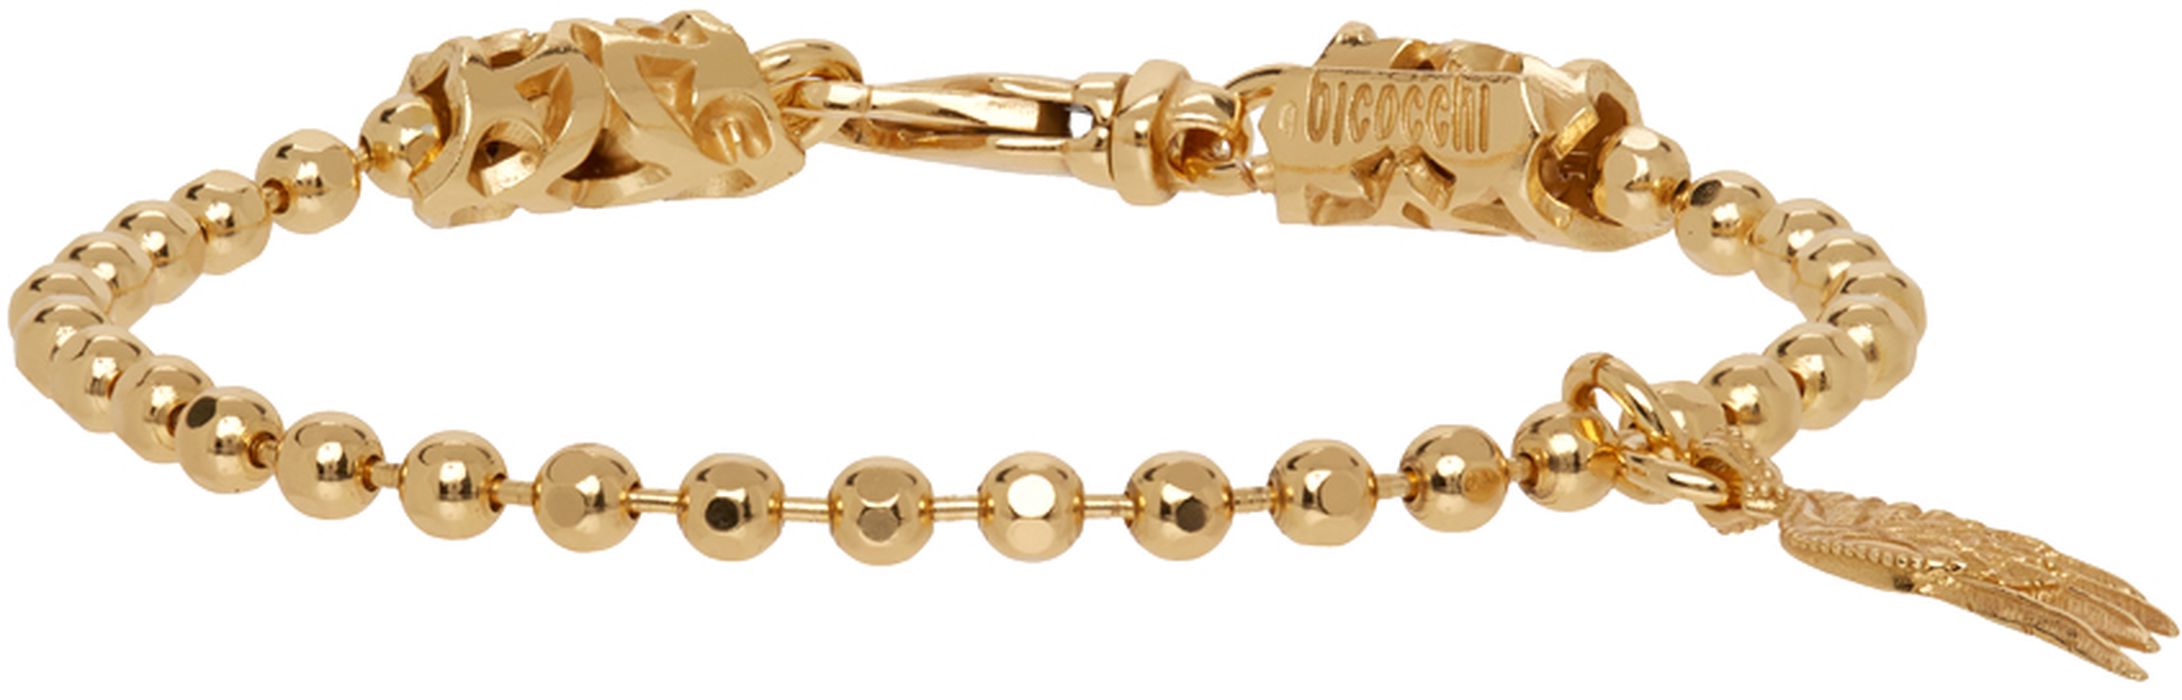 Emanuele Bicocchi SSENSE Exclusive Gold Wing Charm Bracelet